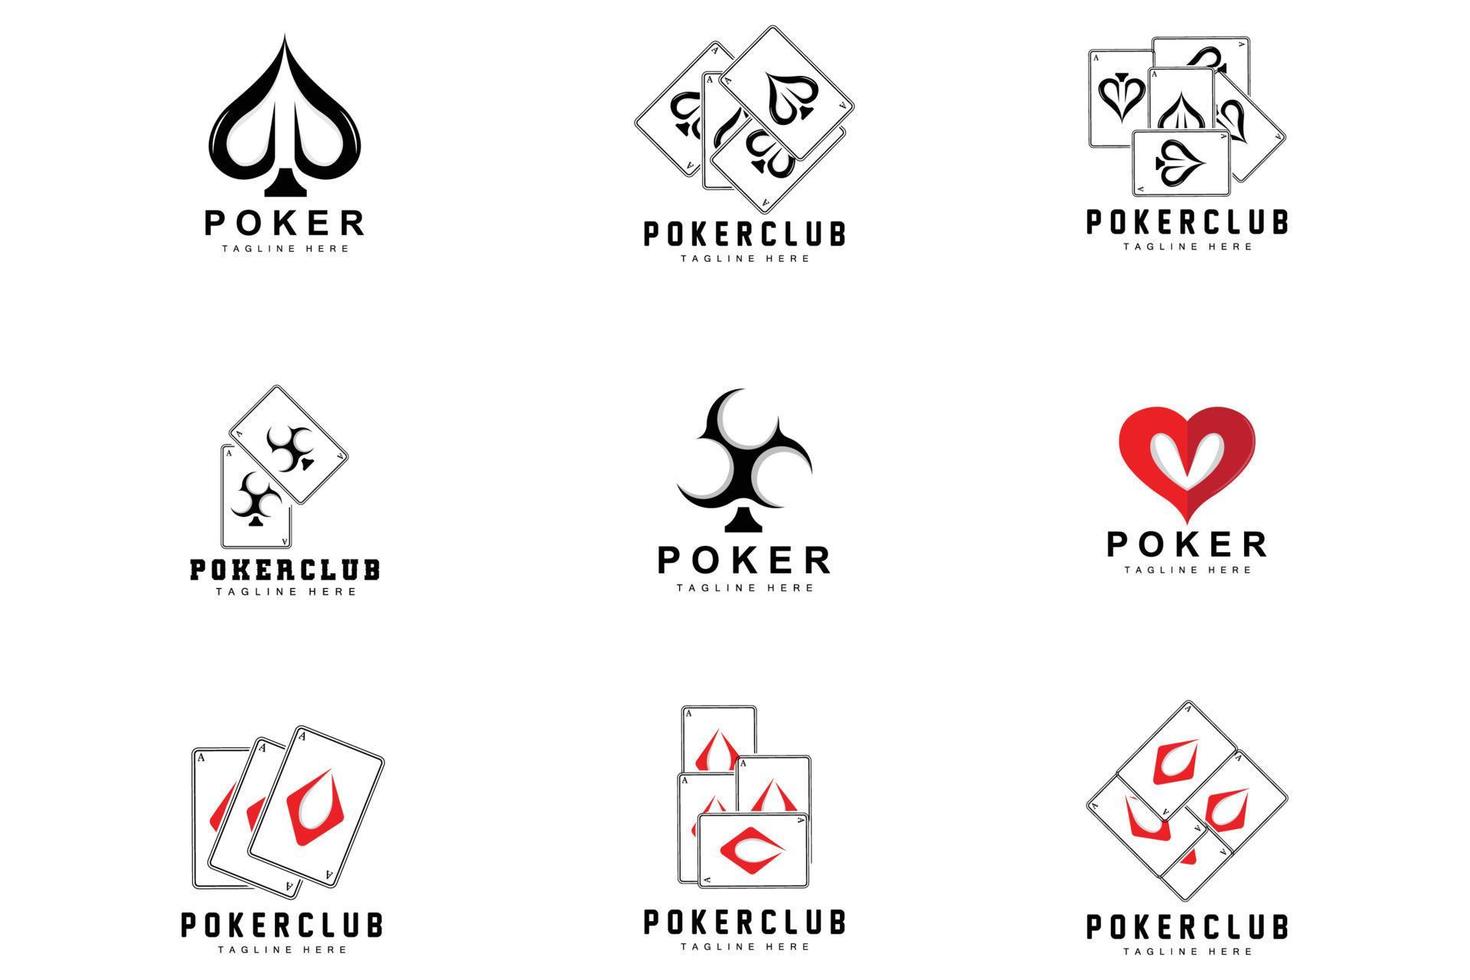 logotipo de la tarjeta del casino de póquer, icono de la tarjeta de diamantes, corazones, picas, as. diseño del club de póquer del juego de apuestas vector